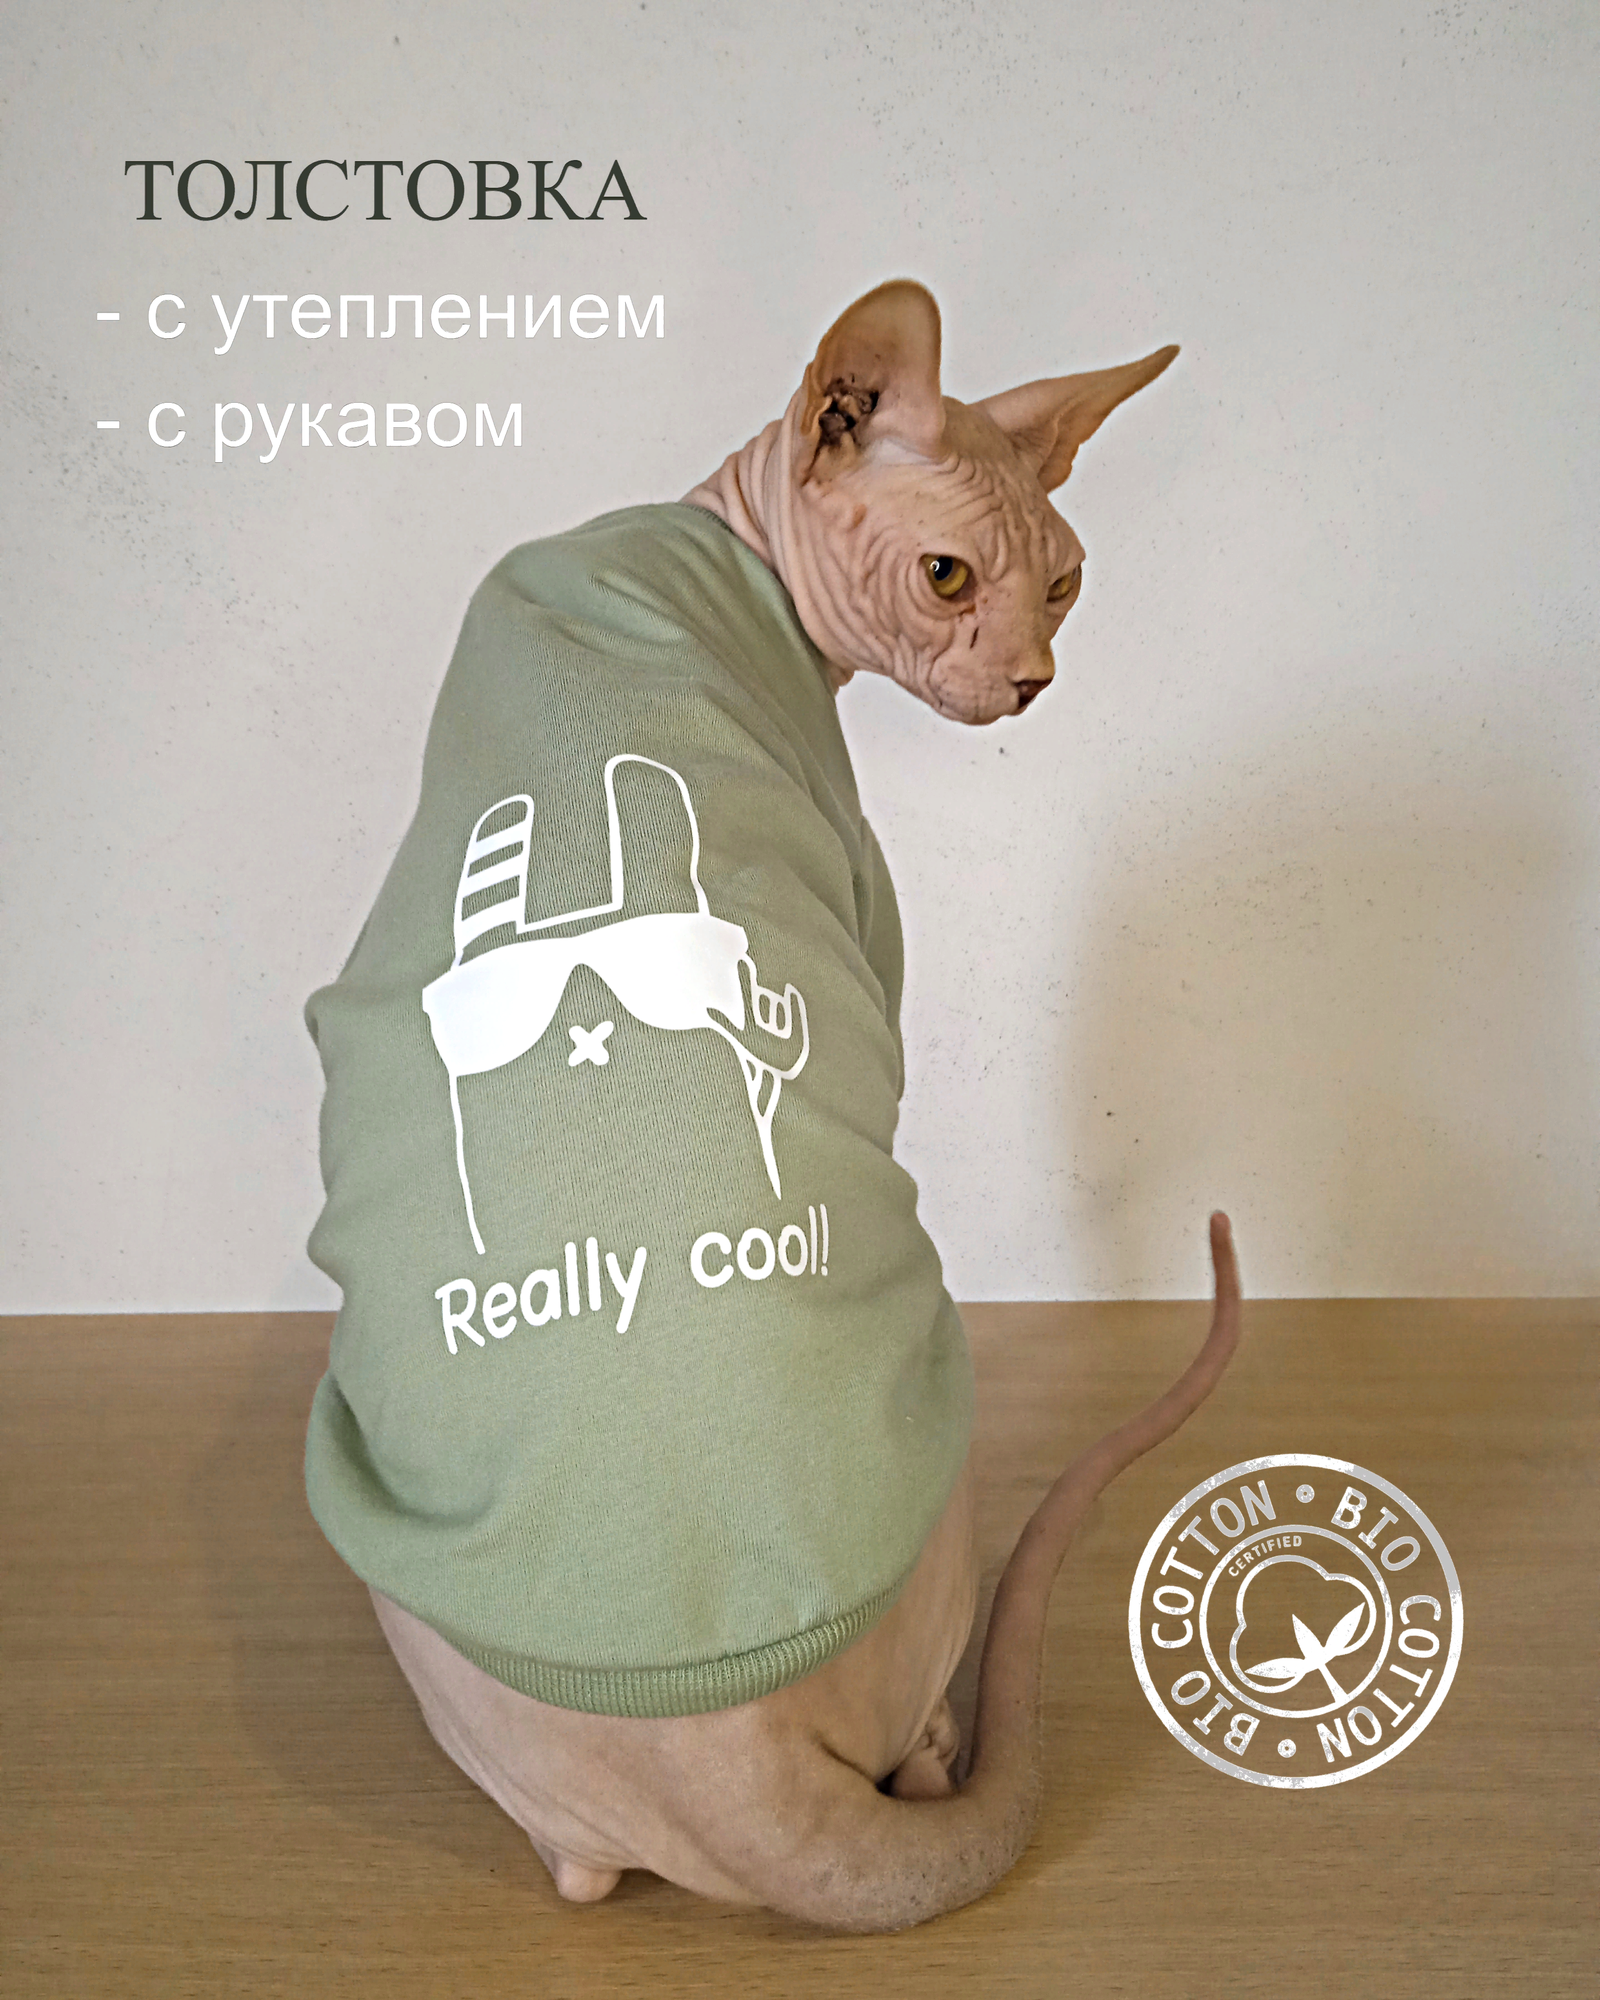 Толстовка "Reali cool" для животных с теплым рукавом от бренда "Котомода" размер L